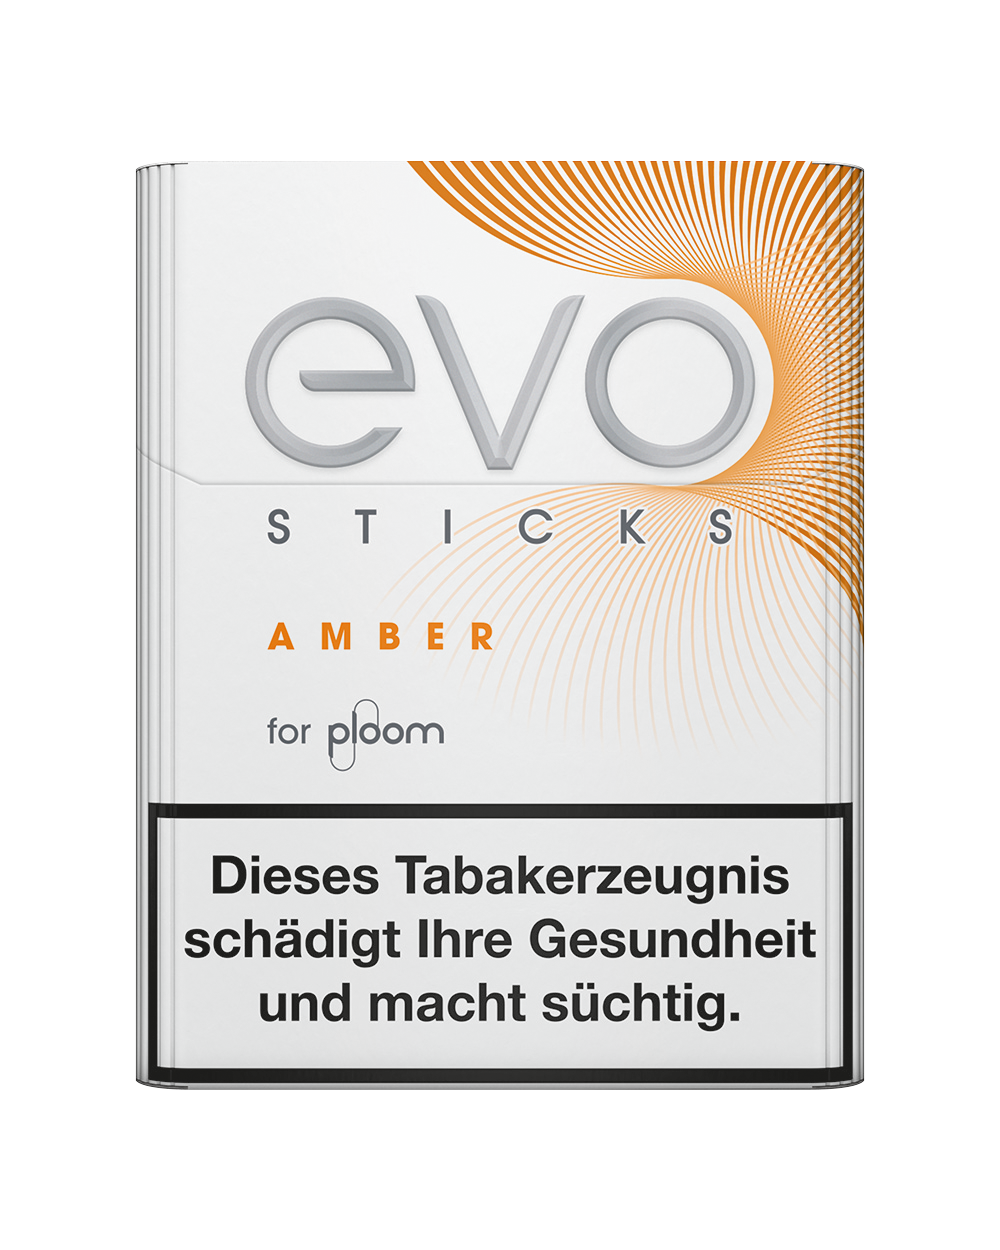  Evo Sticks Amber 1 x 20 Stück